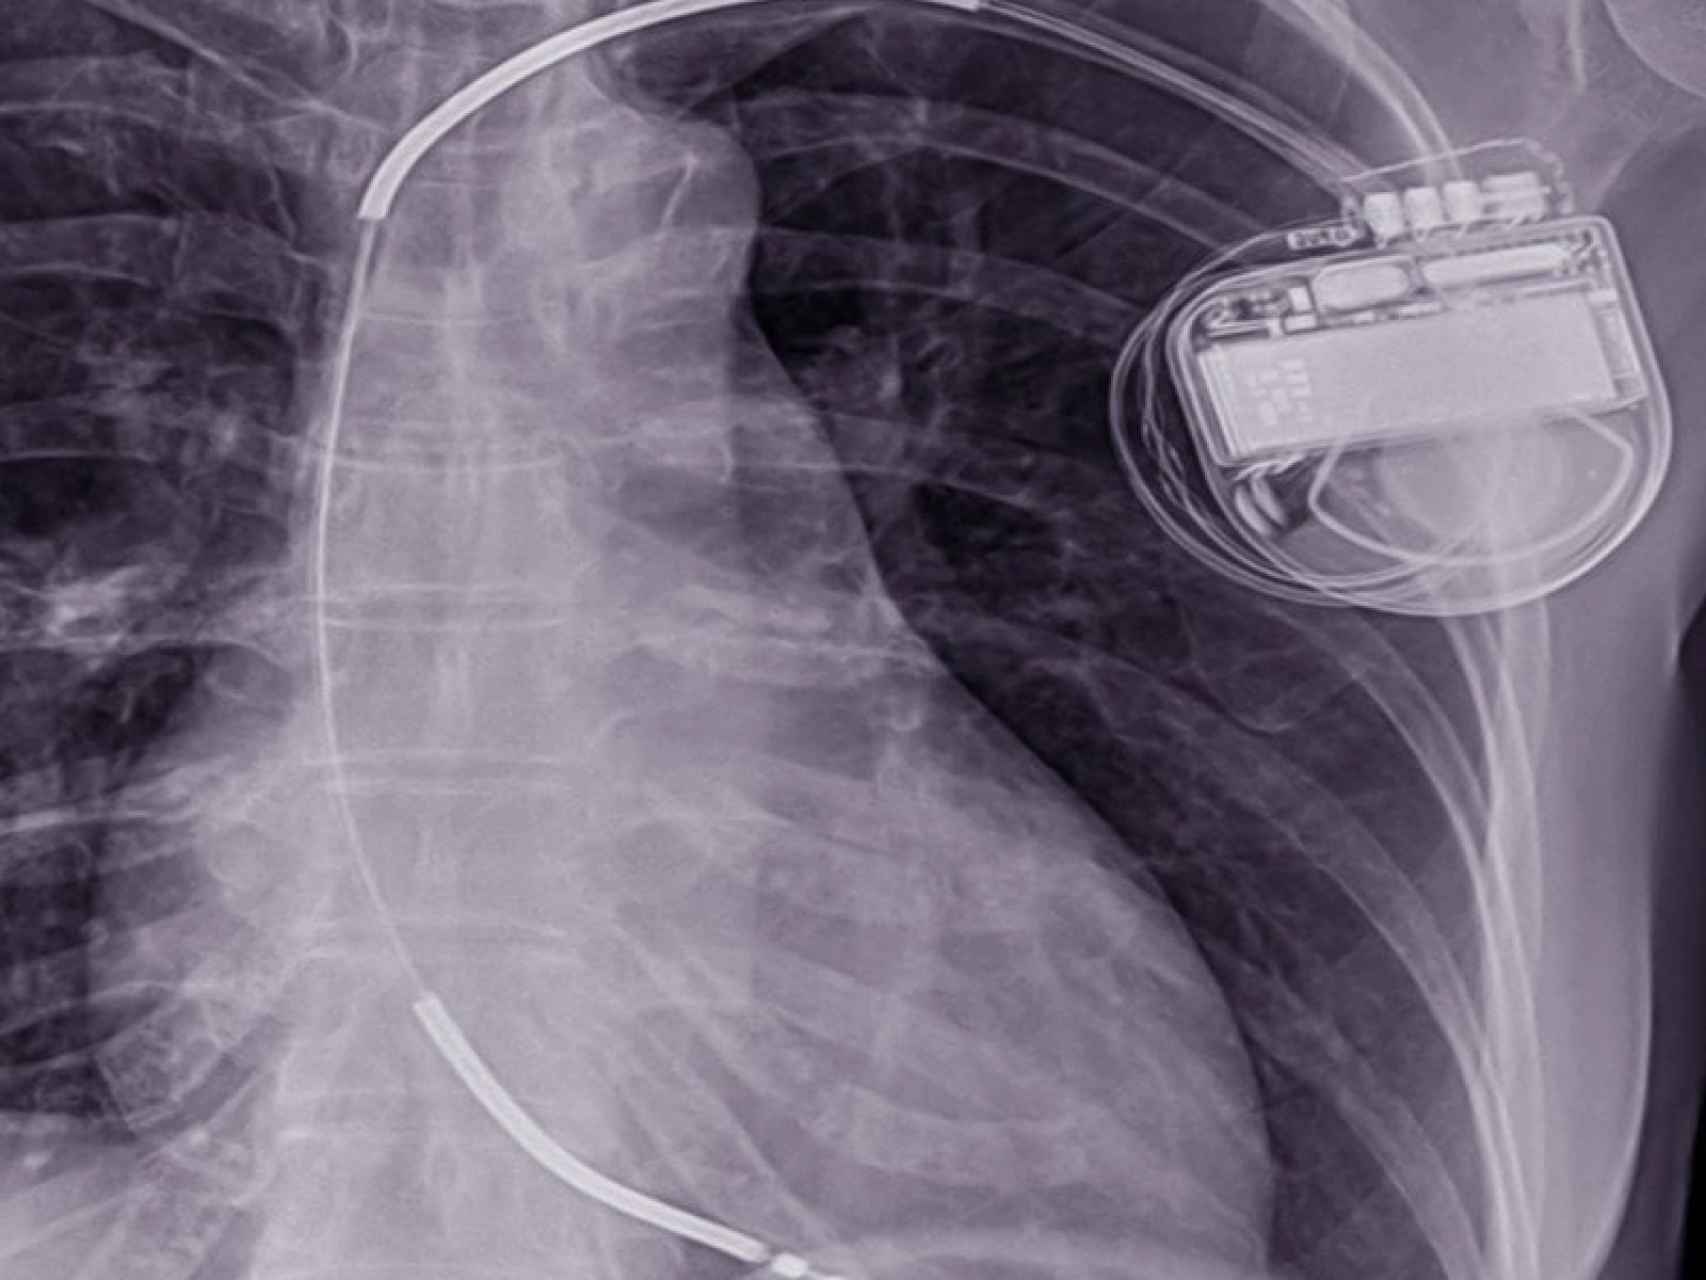 Un DAI (desfibrilador automático implantable) en una radiografía